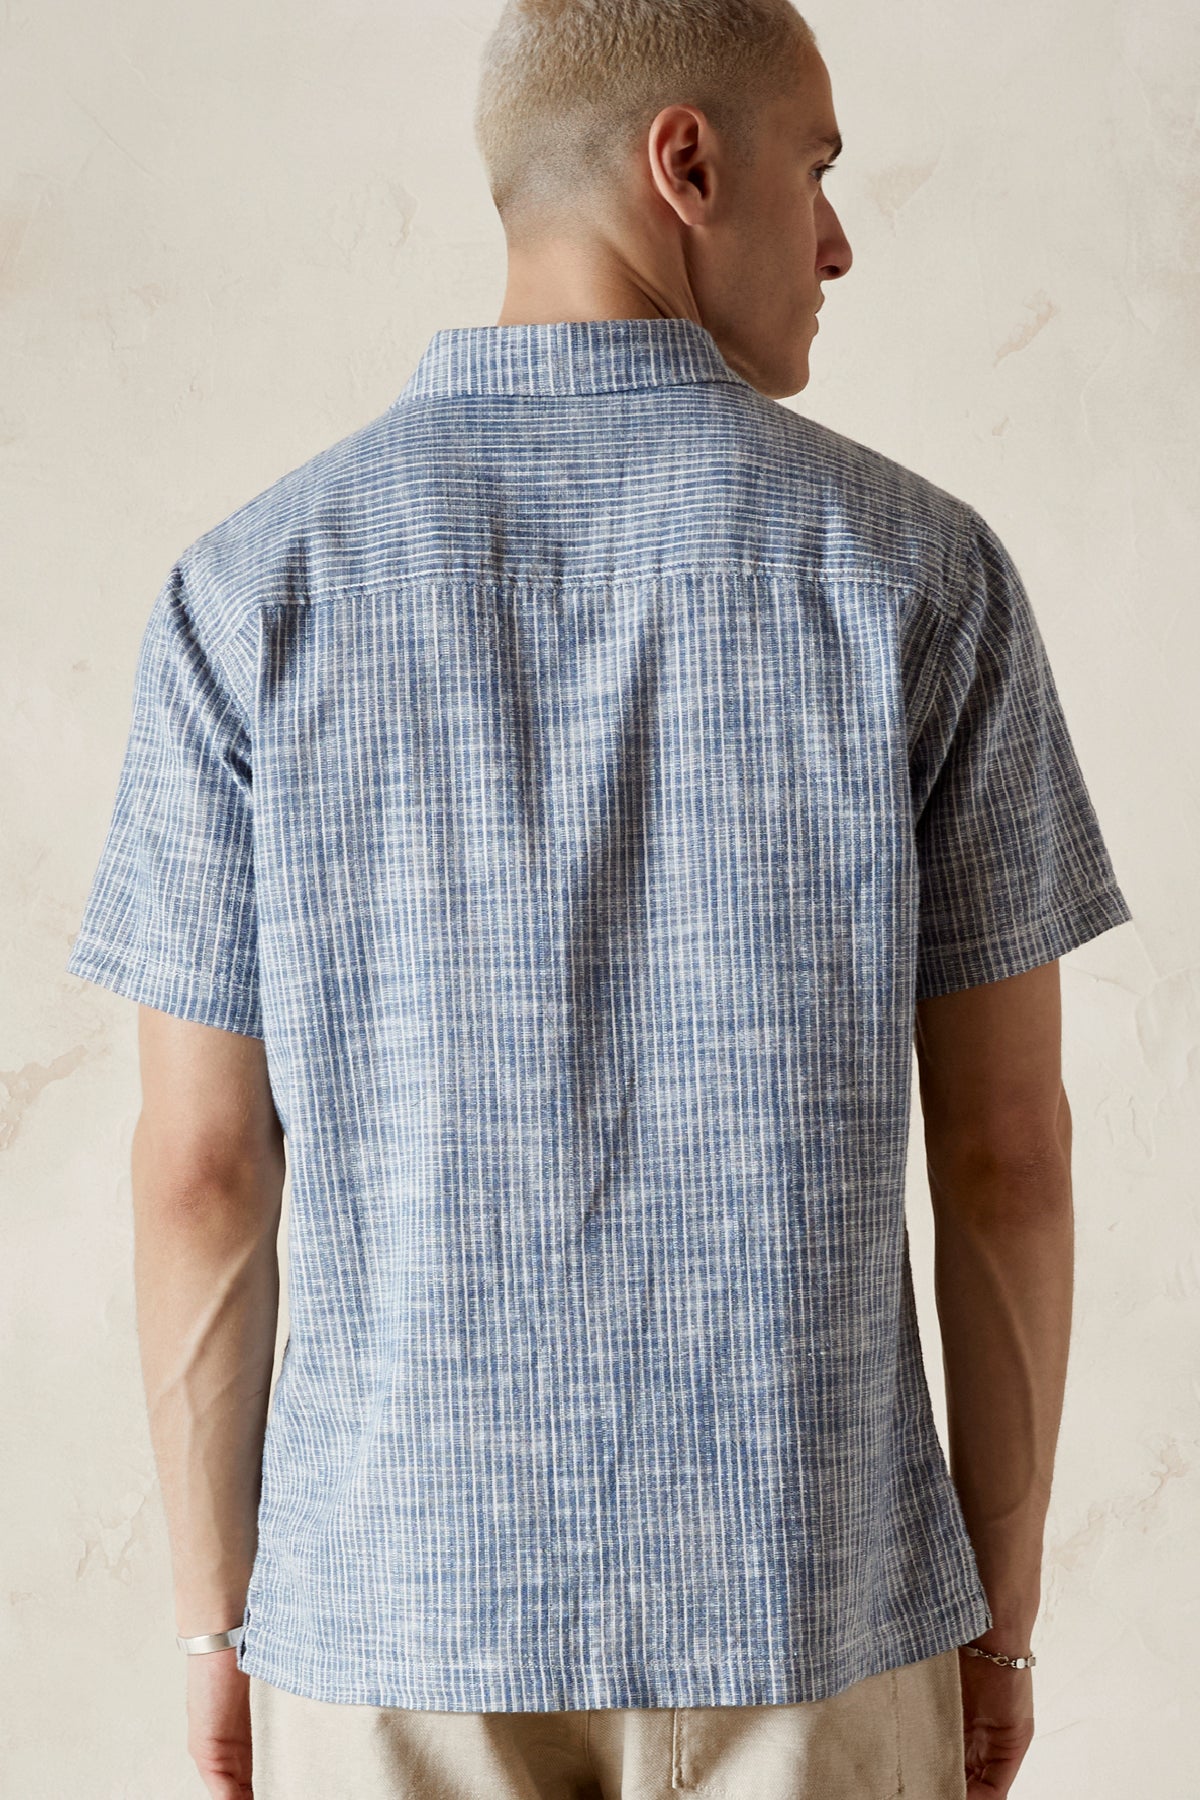 COHEN  Linen Rayon Stripe Shirt